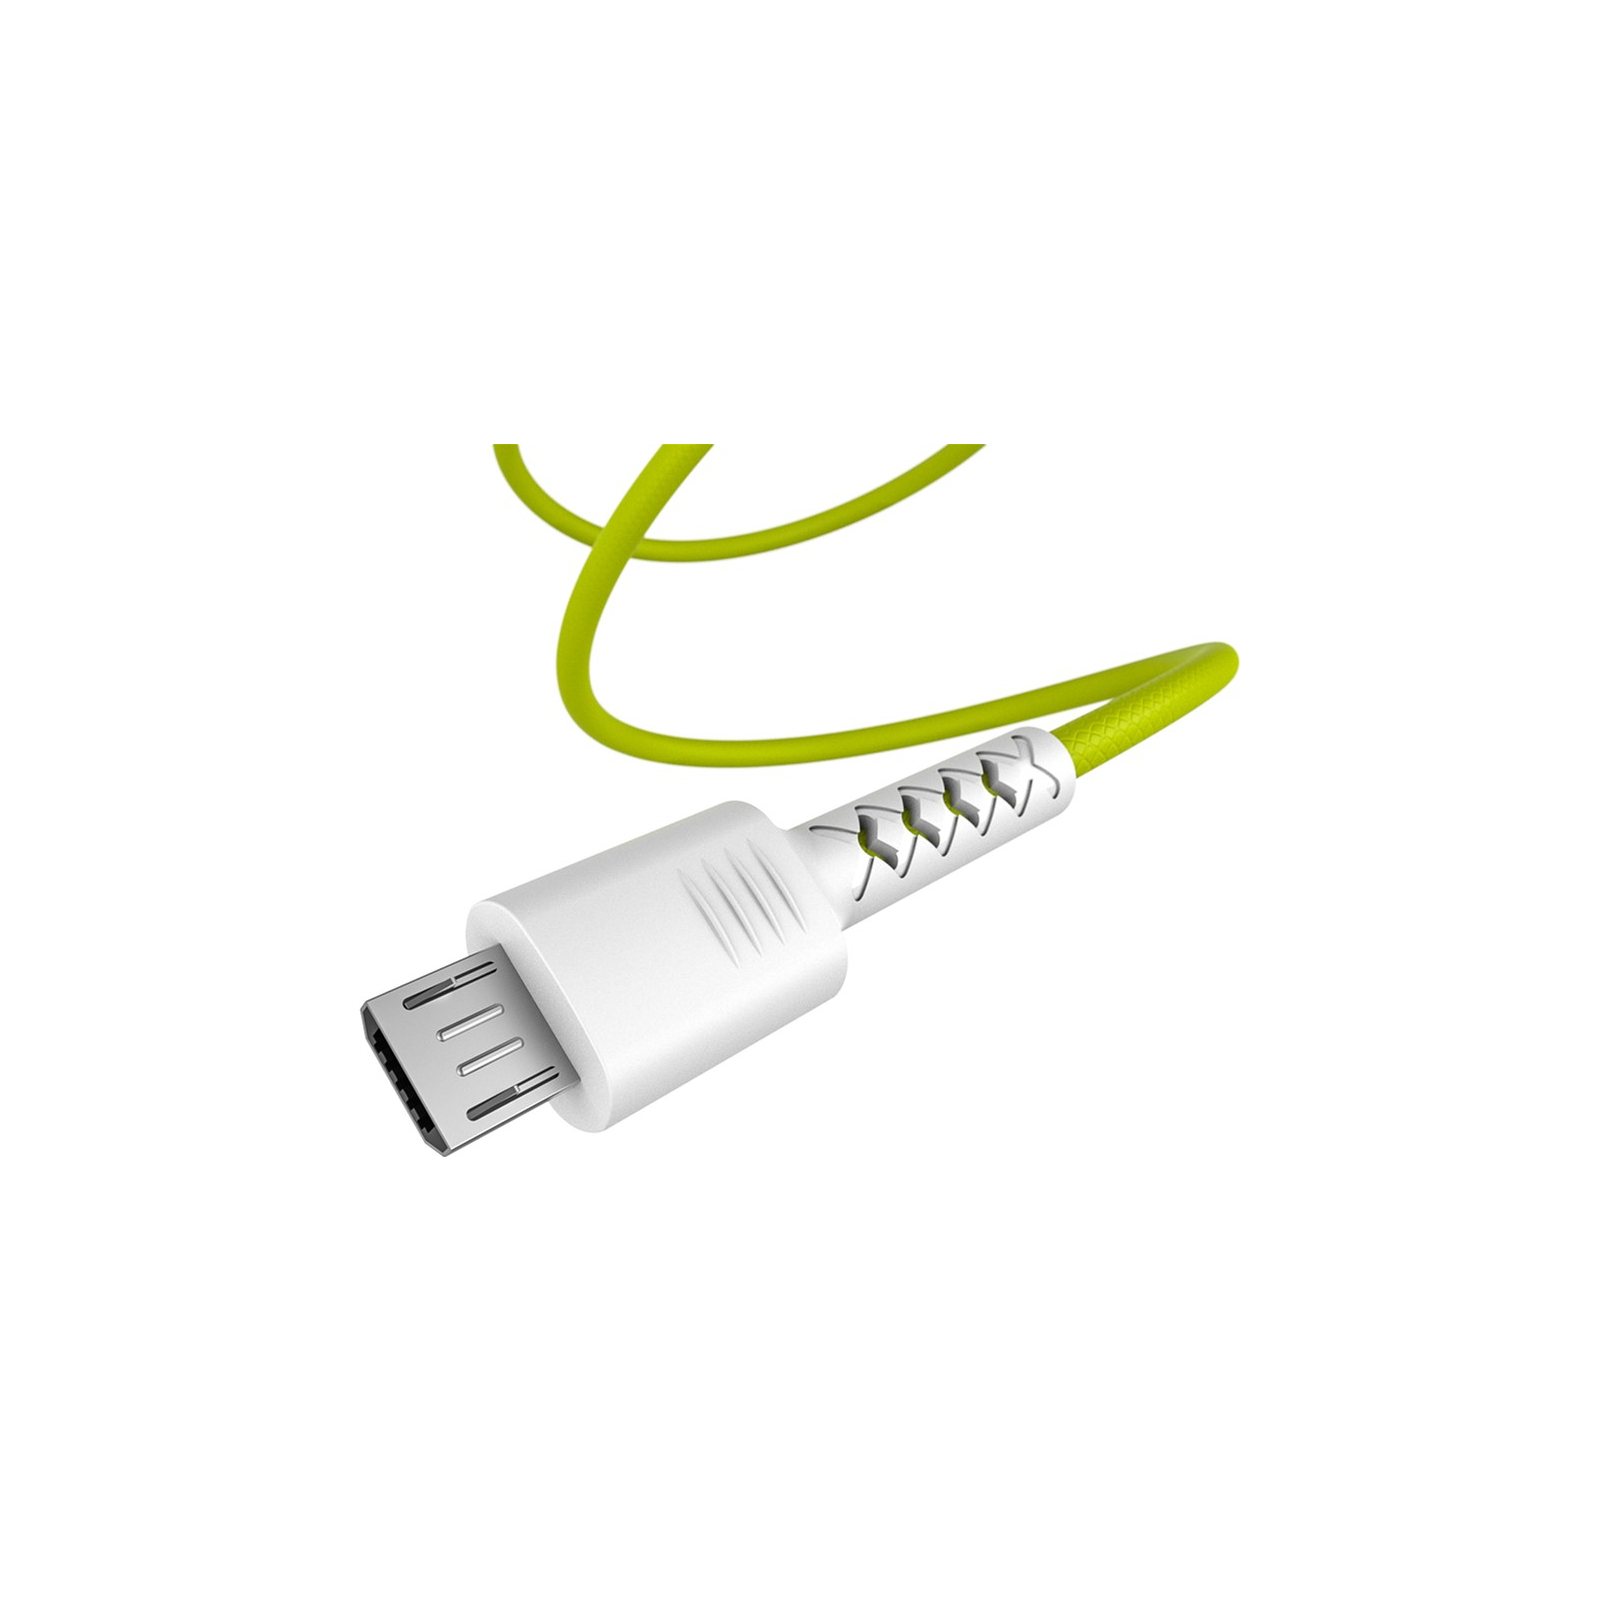 Дата кабель USB 2.0 AM to Micro 5P 1.0m Soft white/lime Pixus (4897058531176) изображение 2